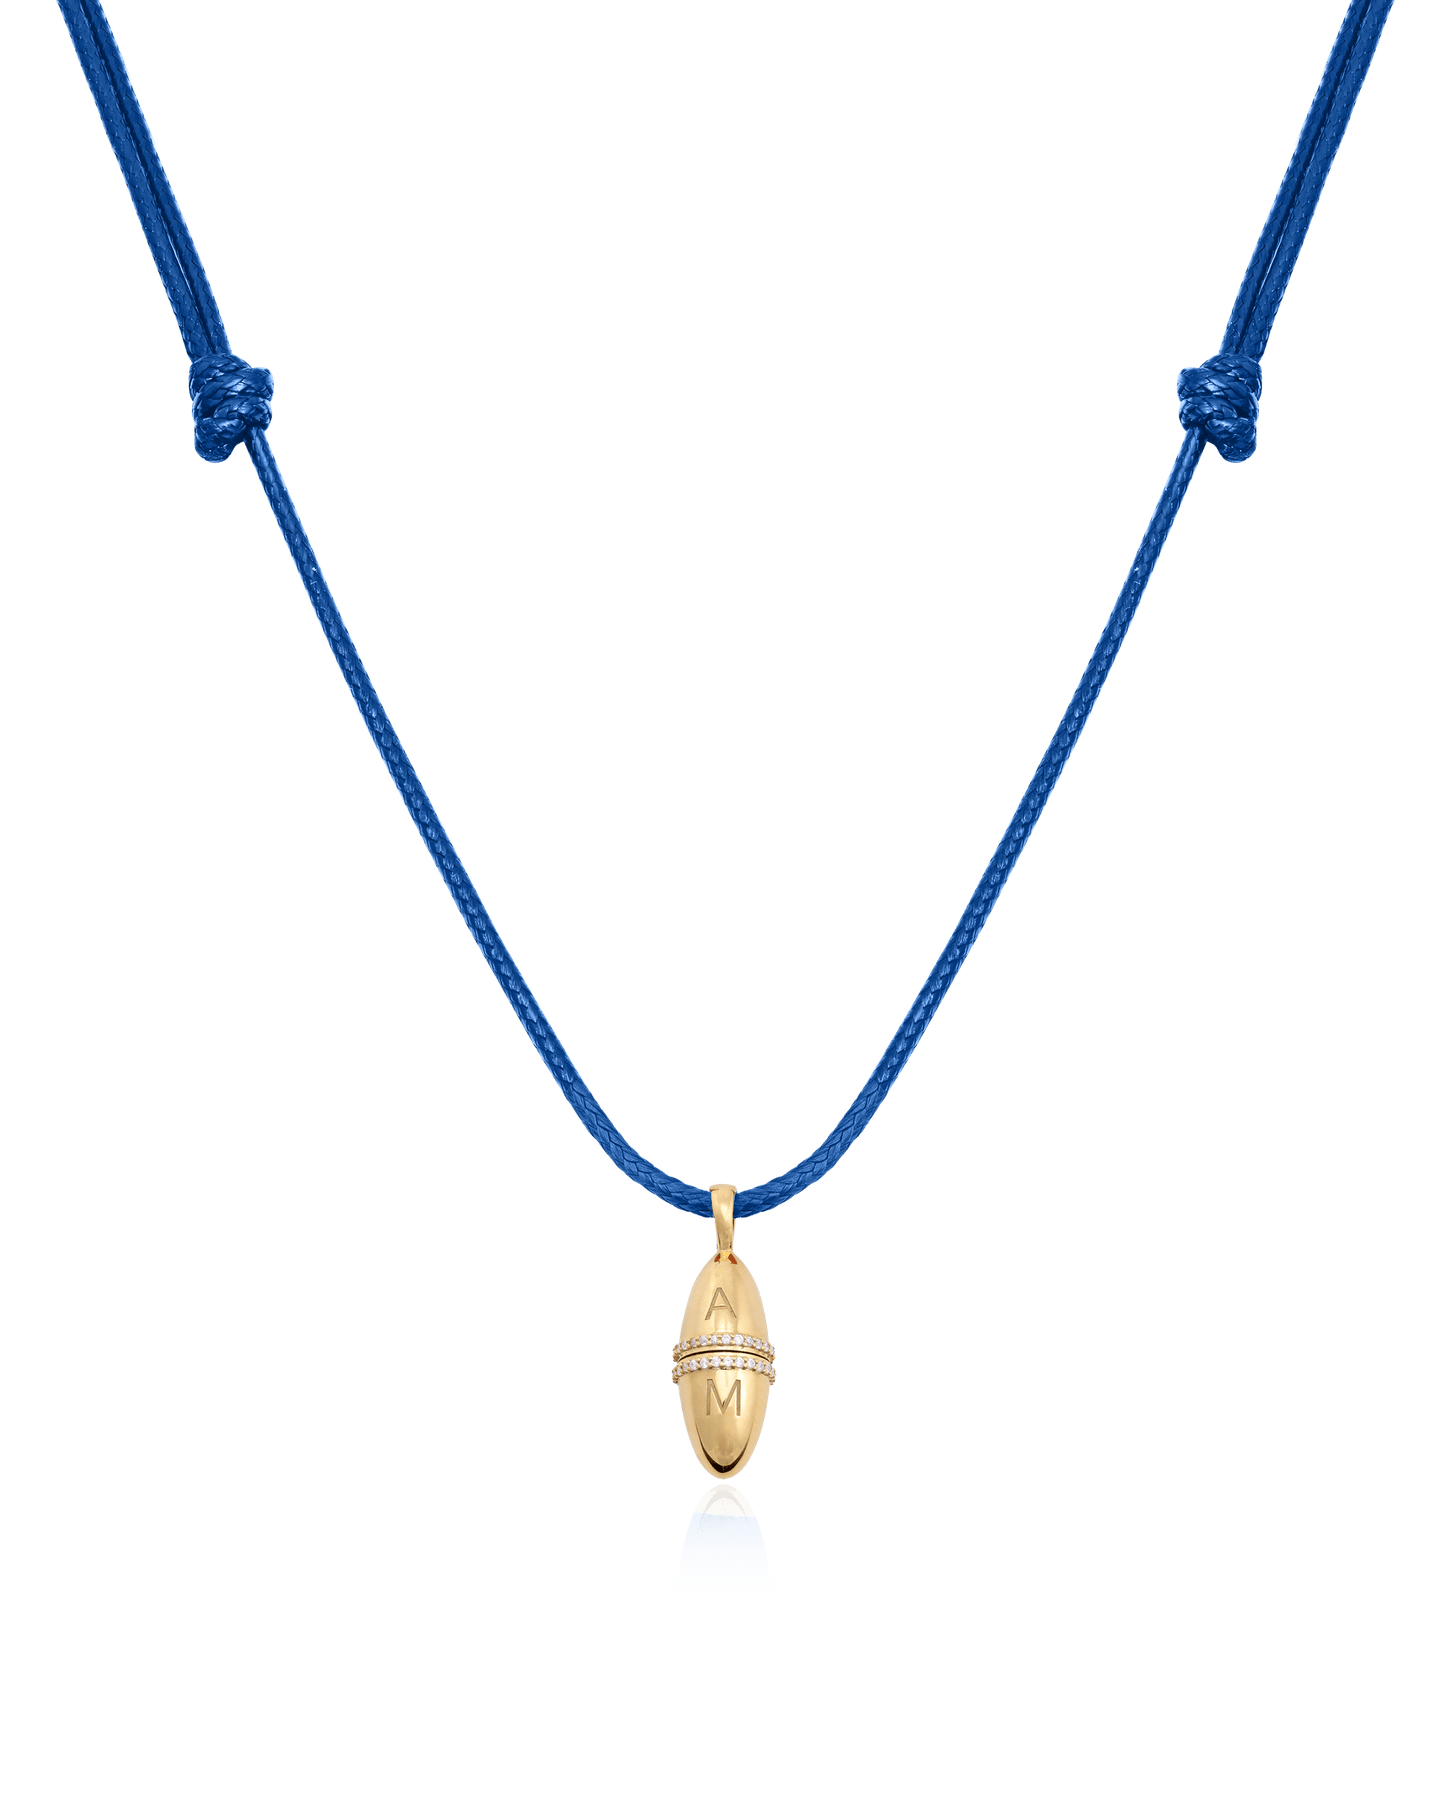 Fabergé Cord Necklace - 18K Gold Vermeil Necklaces magal-dev Blue Adjustable Leather Cord 20"-24" 